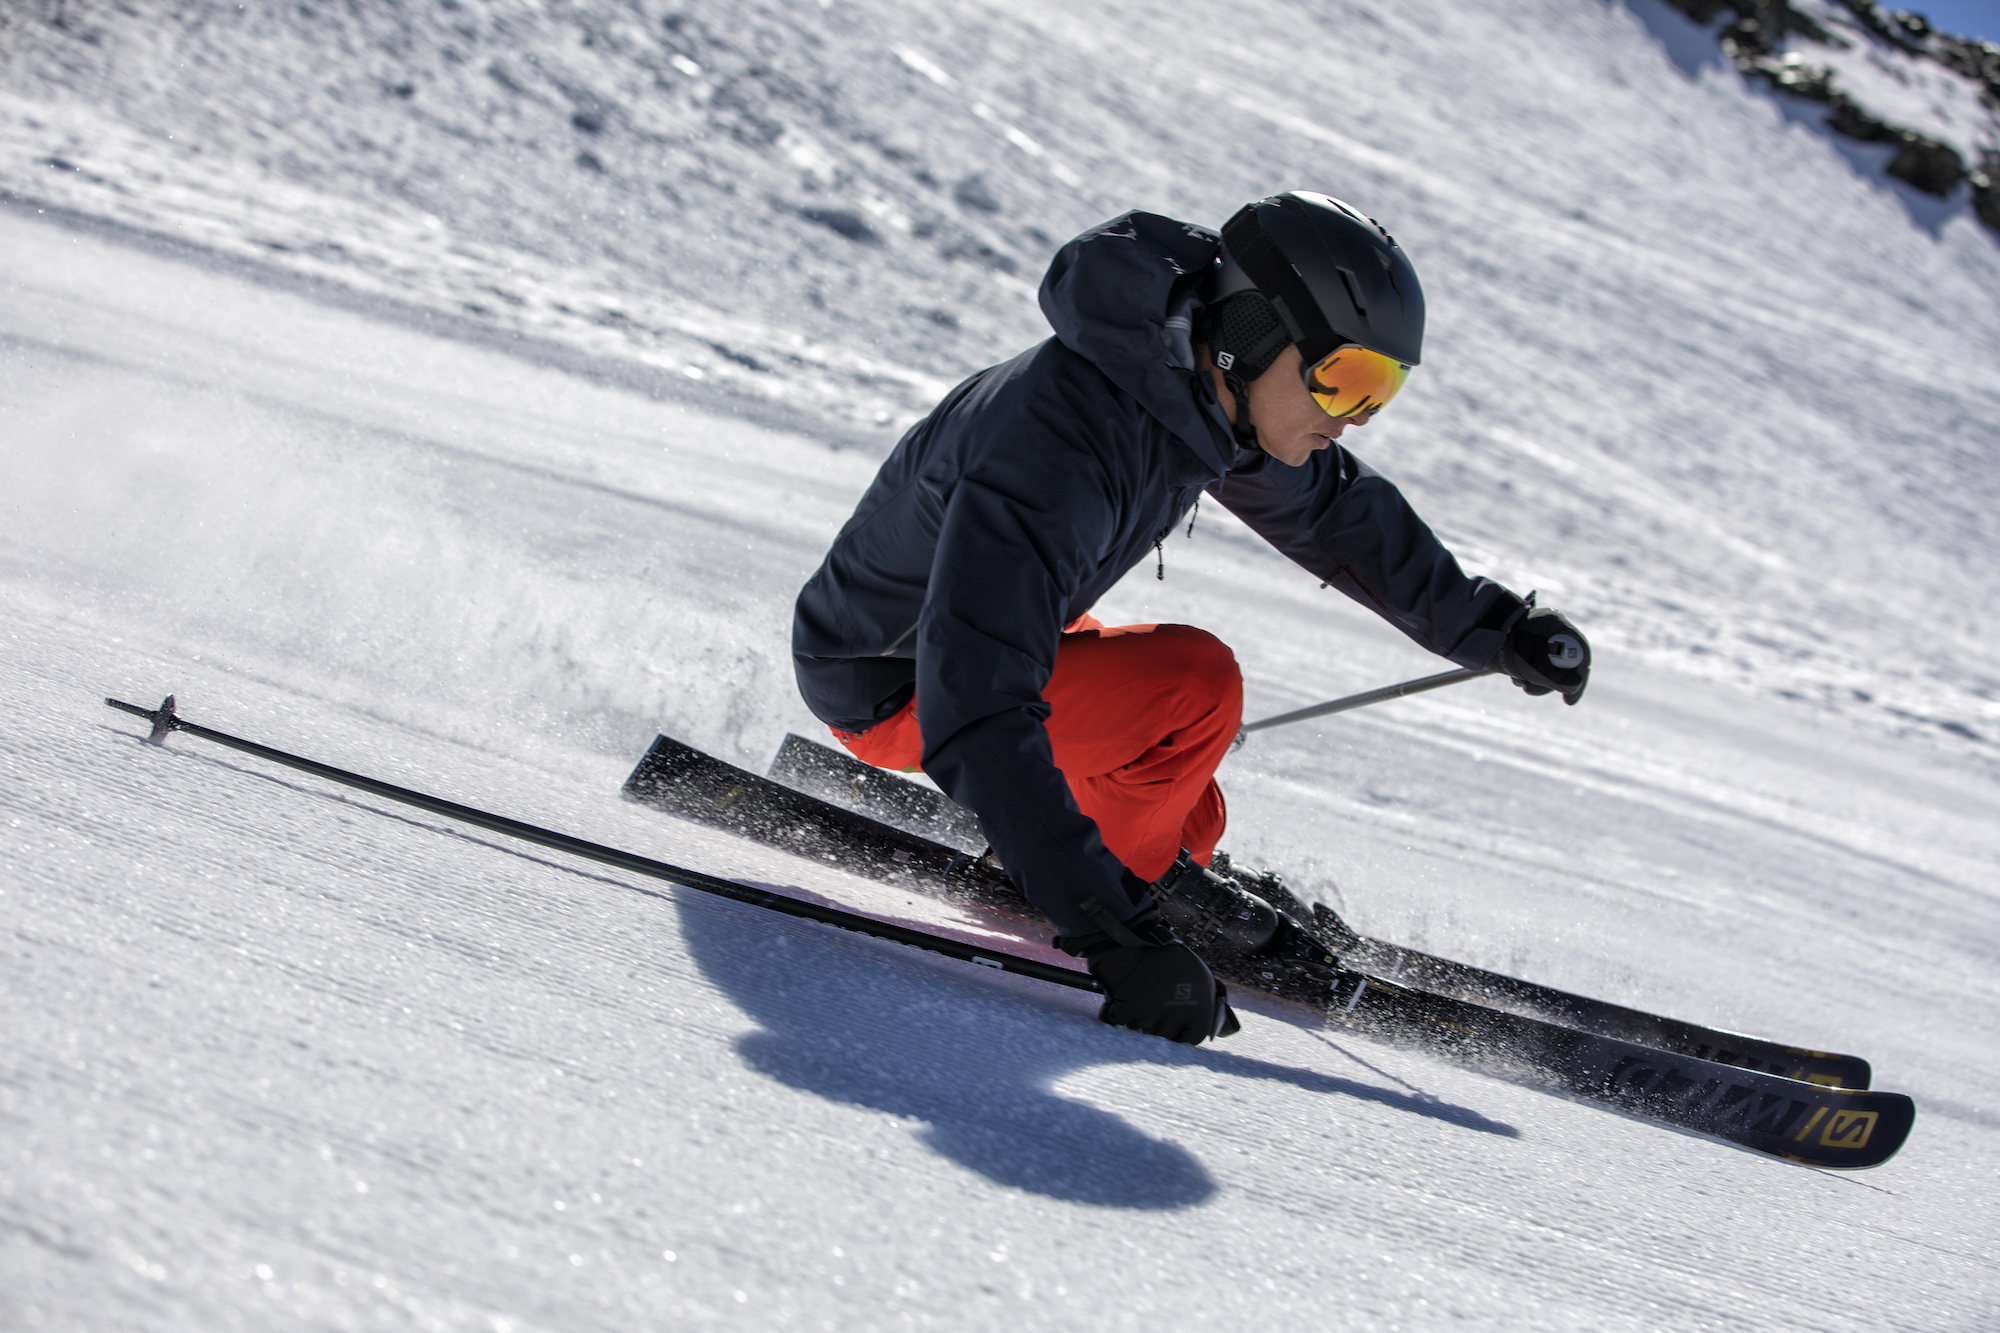 salomon snow skis